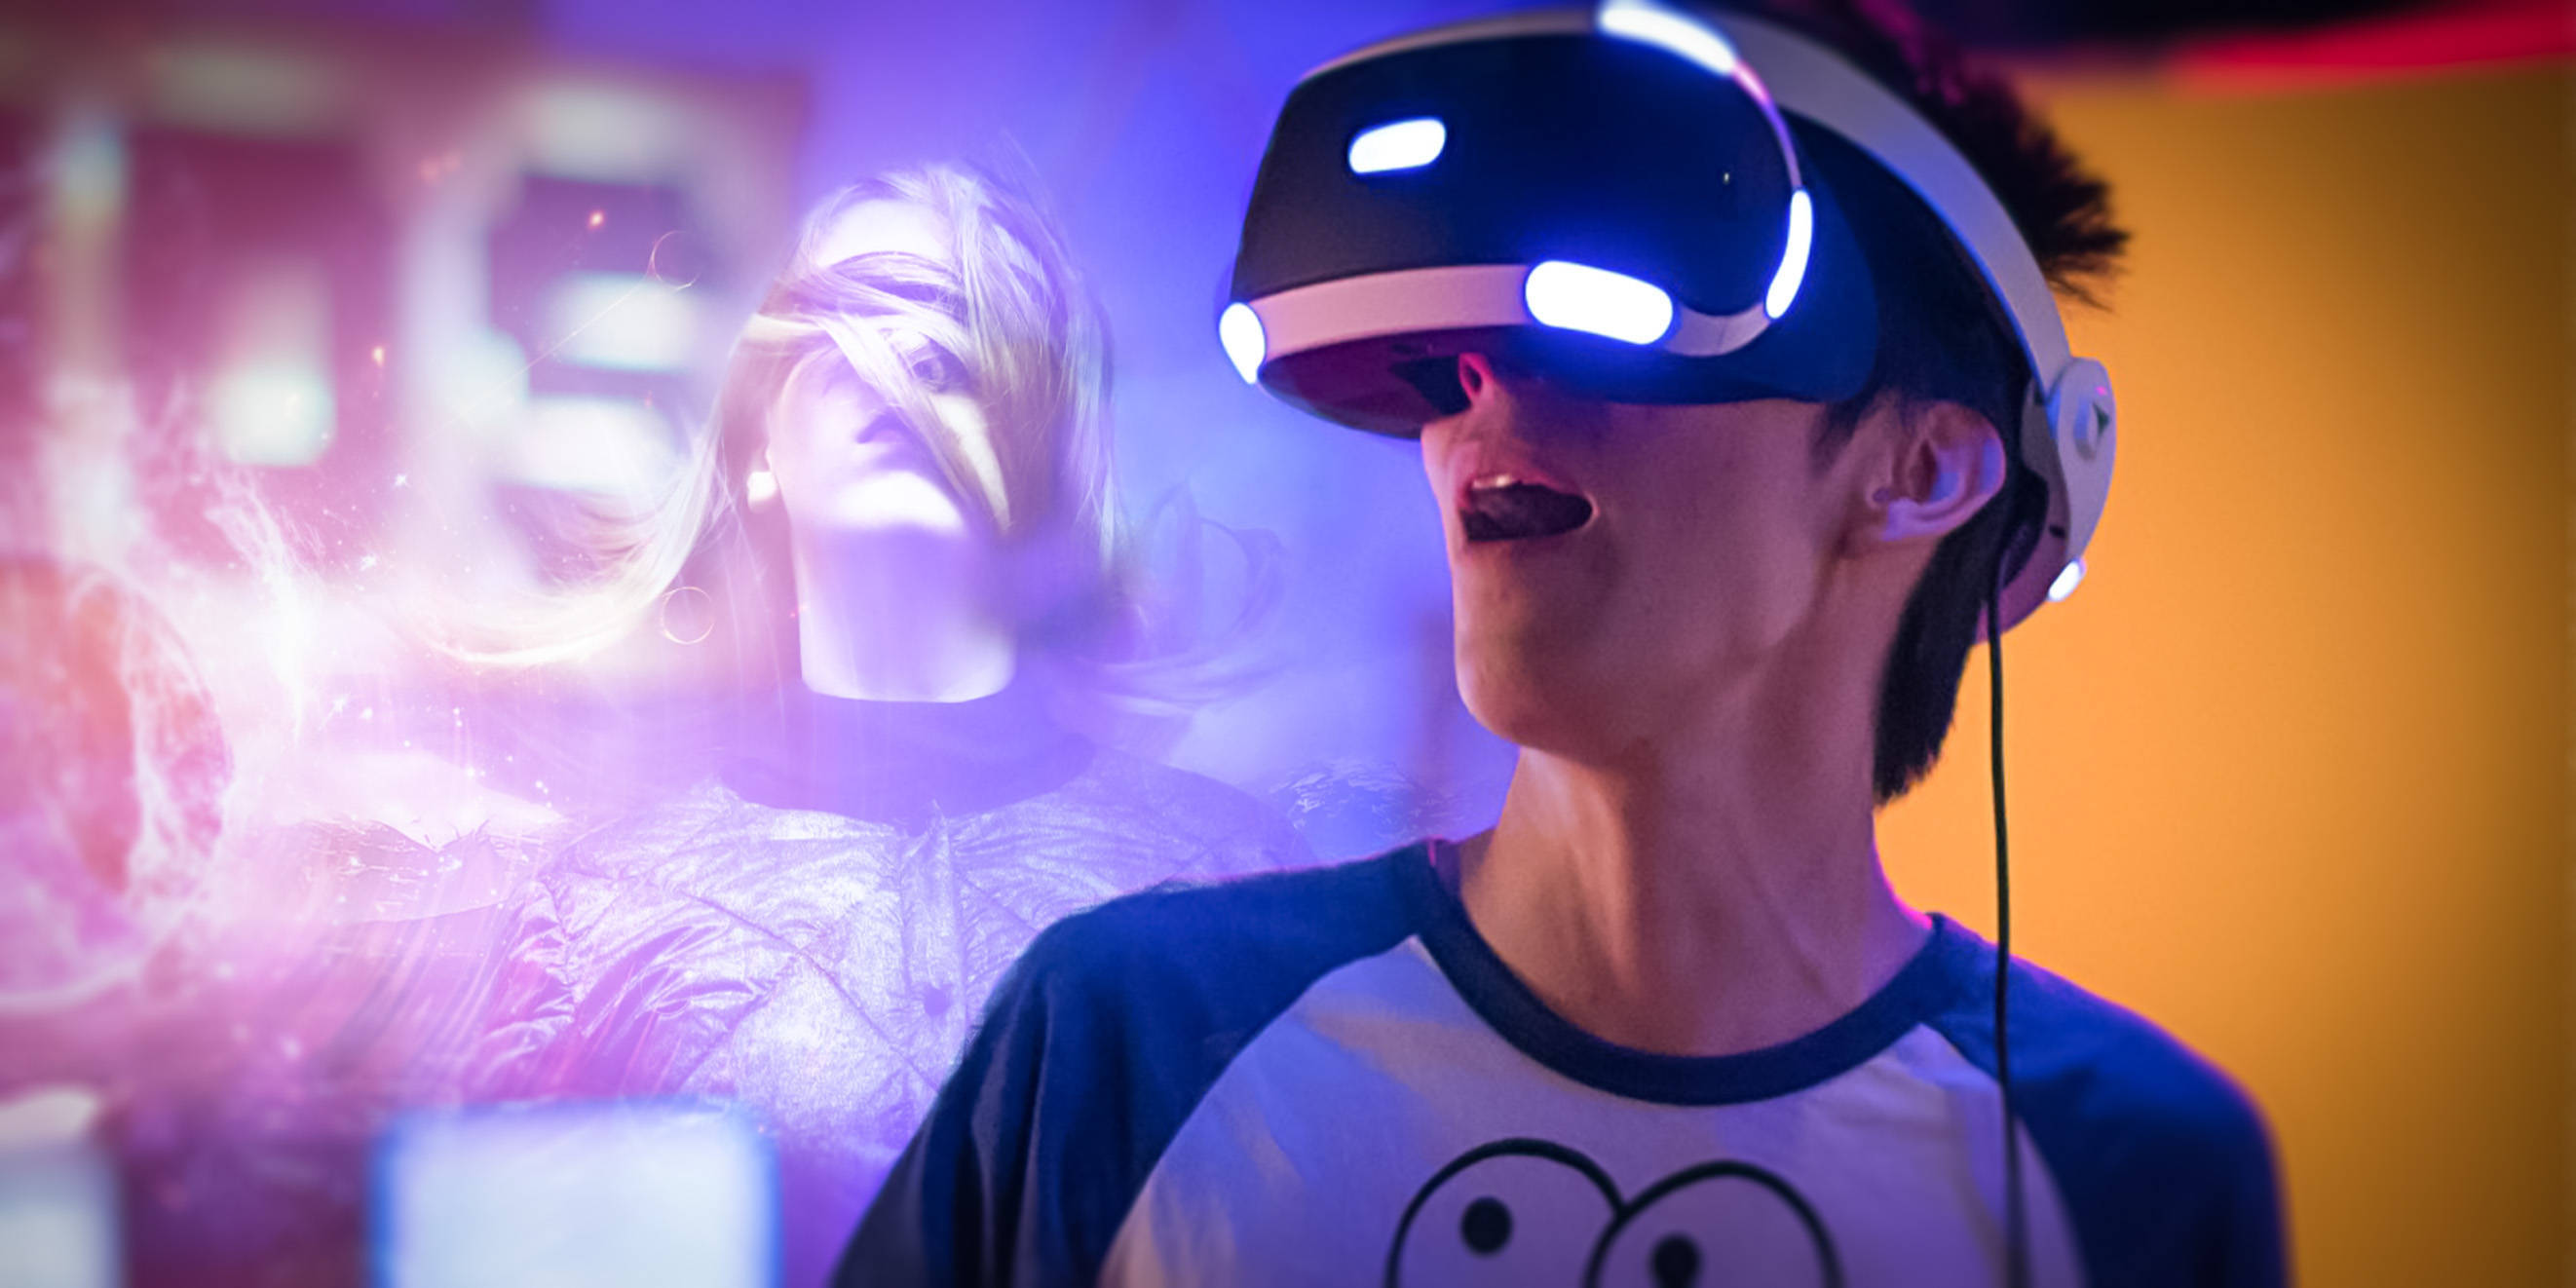 图片展示两人戴着虚拟现实头盔，似乎正沉浸在VR游戏中。他们表情专注，周围有彩色光影，营造出科技感和娱乐氛围。